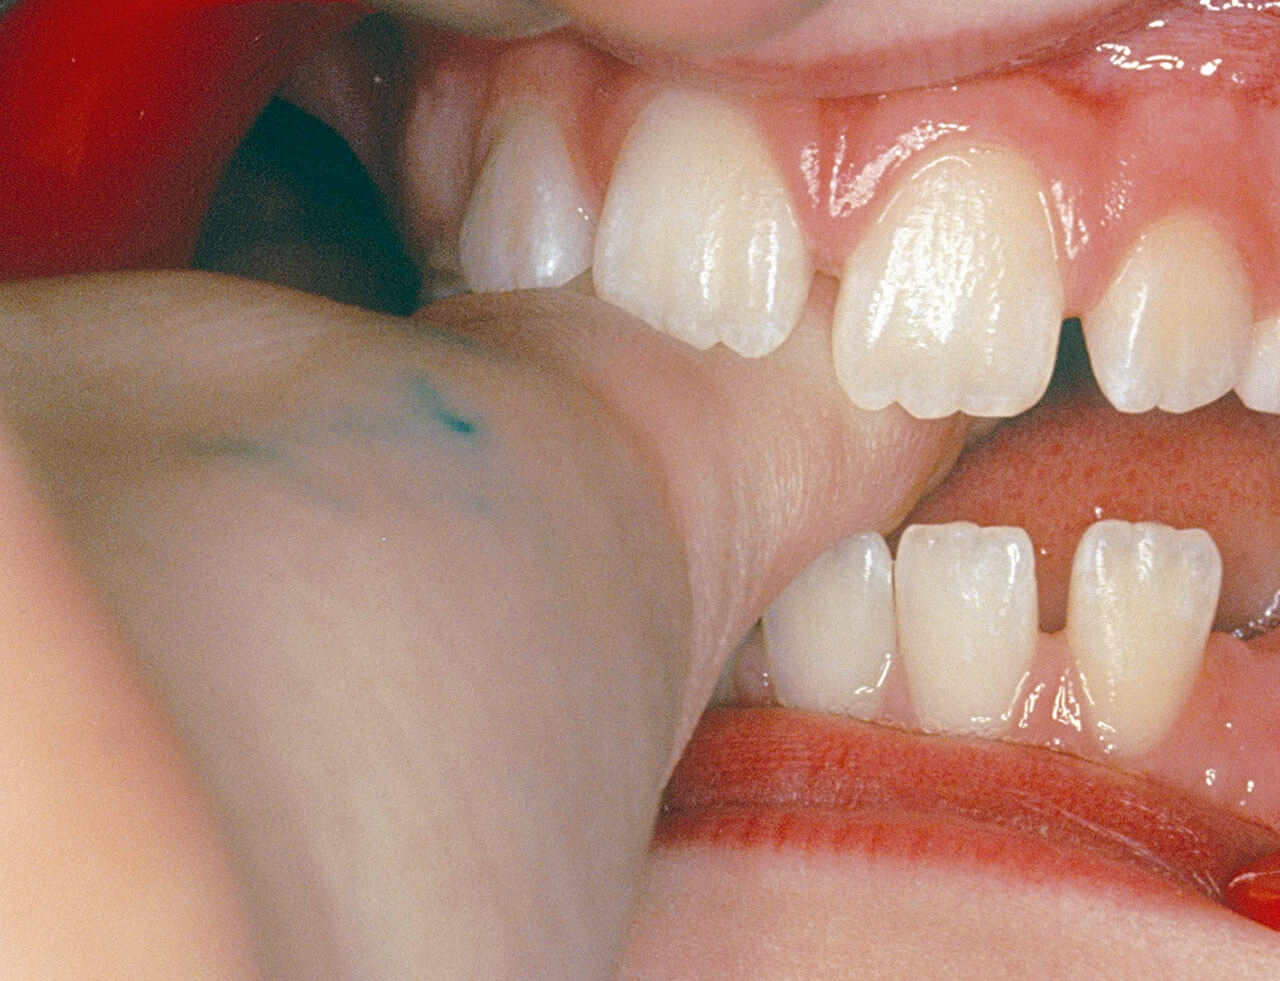 Abb. 6 Bei diesem frontal offenen Biss sorgt der Druck des Lutschdaumens dafür, dass die Zähne nicht komplett bis zur Okklusionsebene durchbrechen können.
